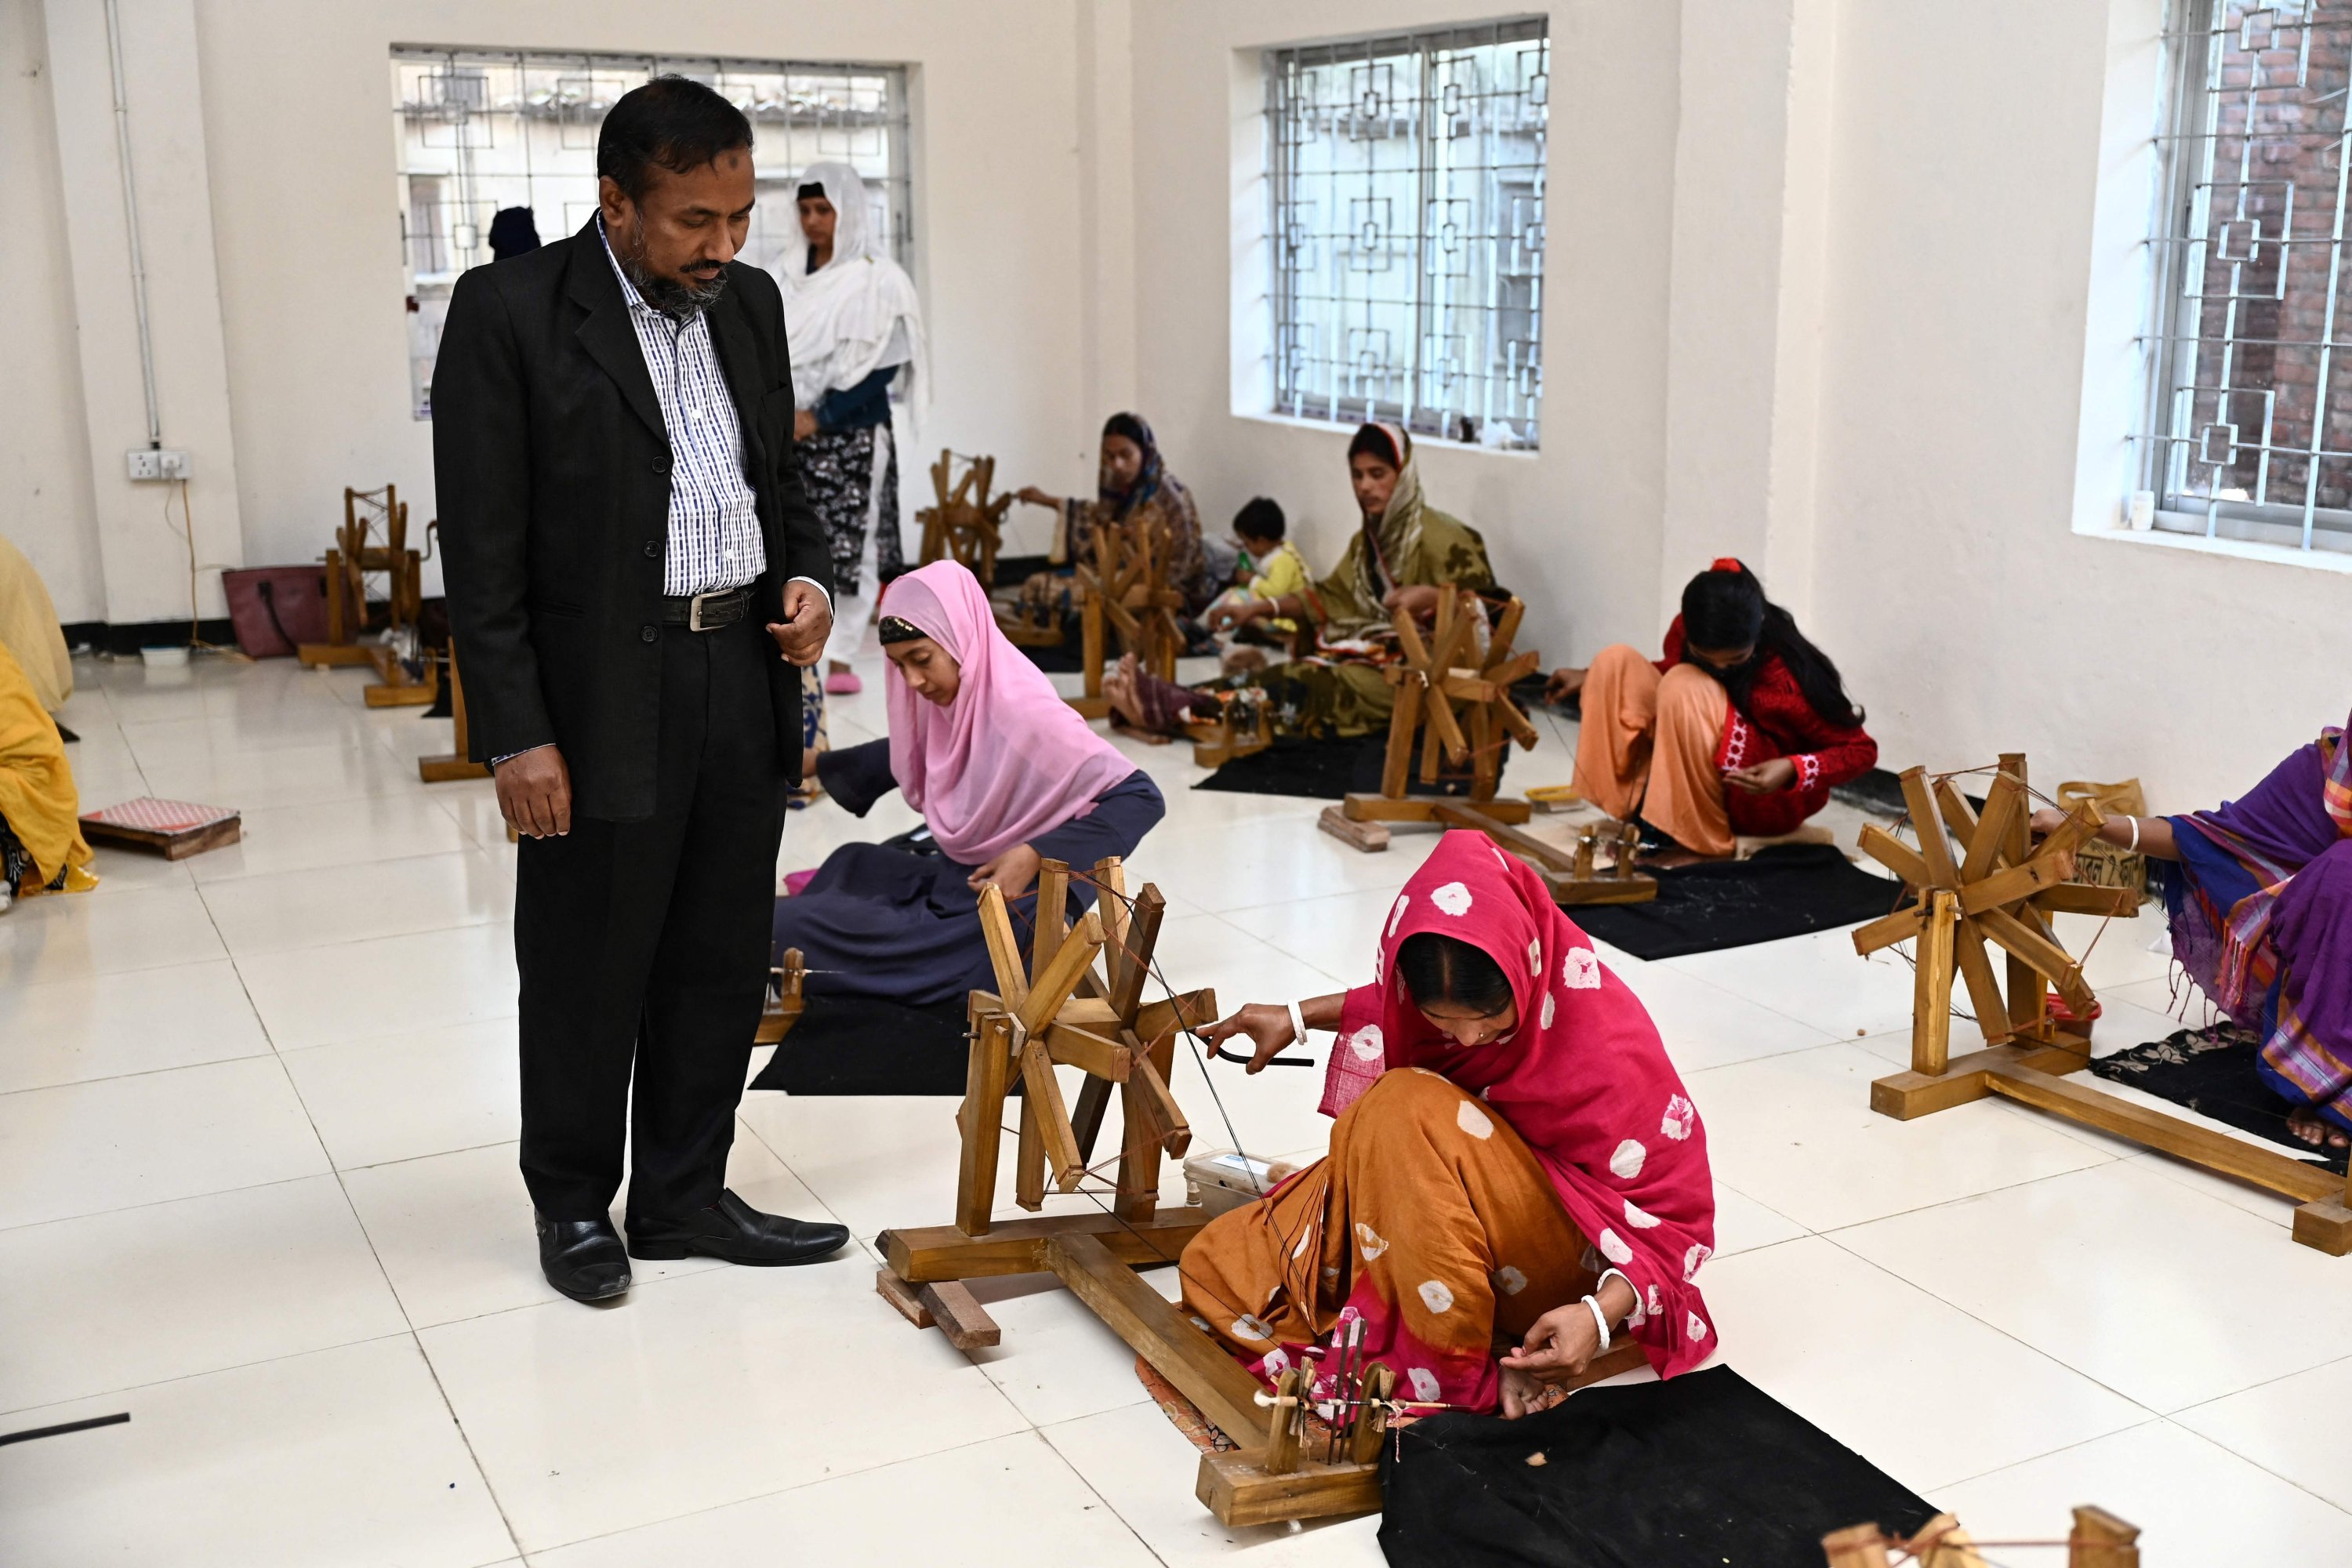 Ayub Ali, seorang pejabat senior pemerintah membantu menggembalakan proyek kebangkitan kain muslin Dhaka, melihat para pekerja memintal benang dari kapas untuk membuat pakaian kain muslin tradisional di fasilitas Proyek Muslin Dhakai di Narayanganj, Dhaka, Bangladesh, 9 Januari 2022. (AFP)